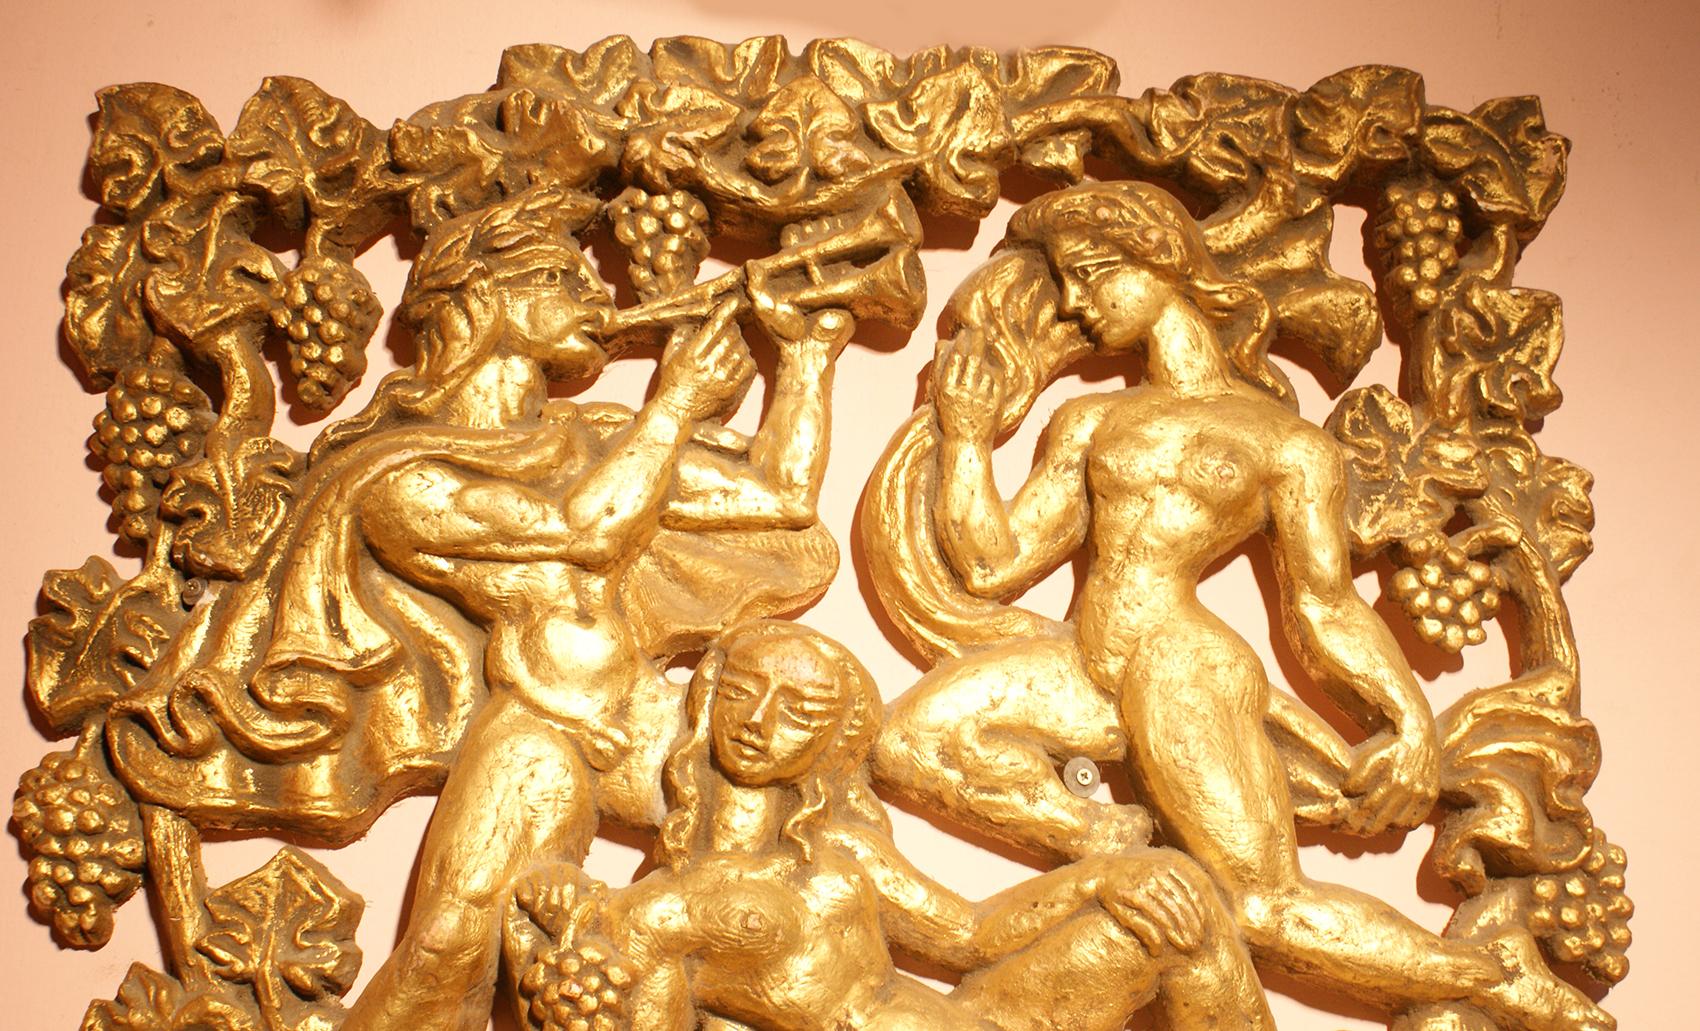 Cette pièce présente une image représentant des créatures mythologiques dans un relief en plâtre de deux femmes nues et d'un homme jouant de la flûte entouré de grappes de raisin et de feuilles en couleur dorée. 
Le relief du plâtre rend le panneau